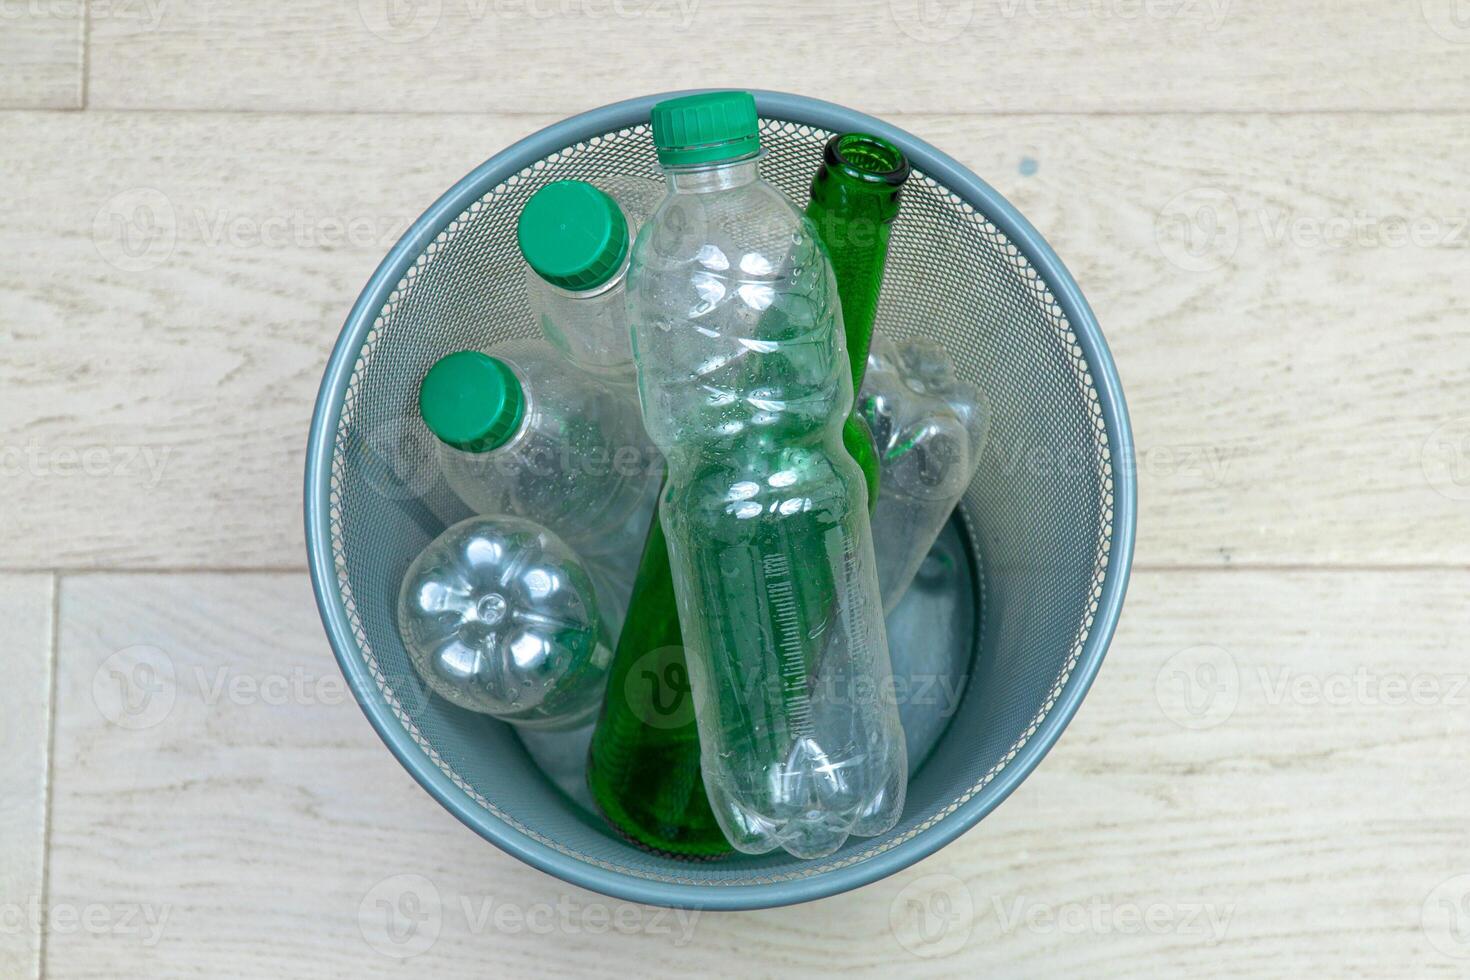 seis diferente el plastico y vaso botellas en el oficina basura poder. ecología y reciclaje de residuos desde varios crudo materiales foto